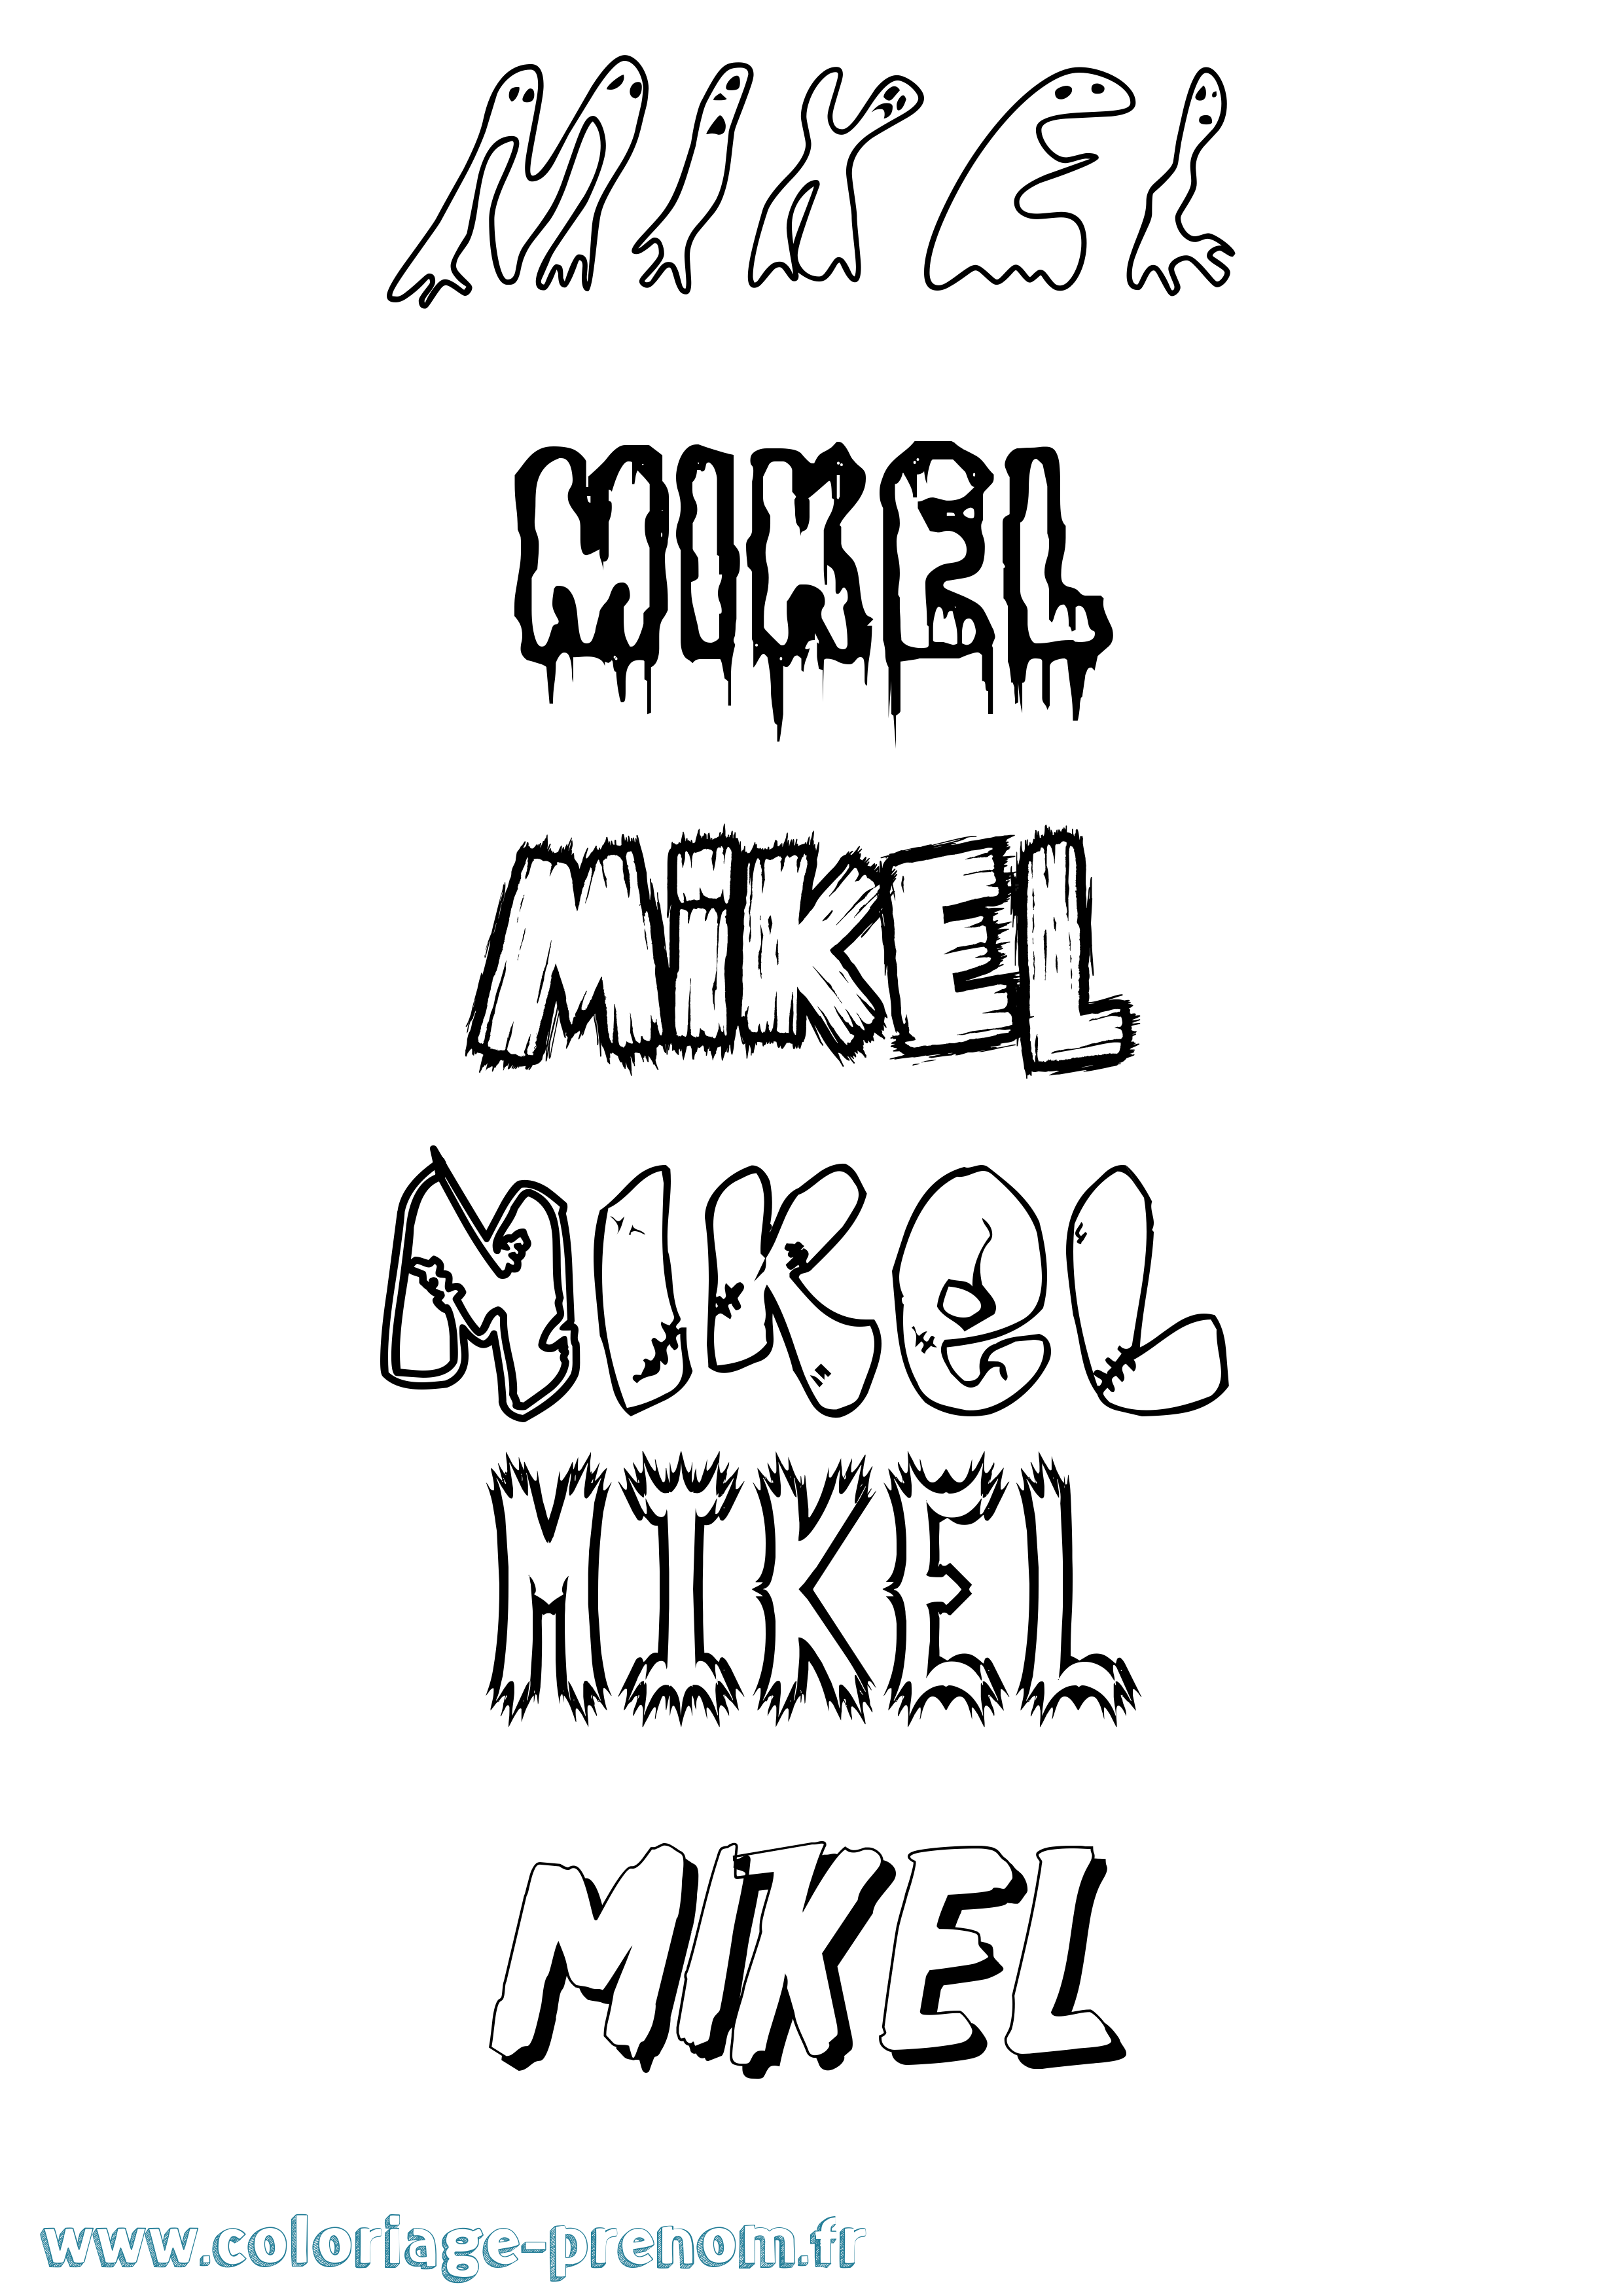 Coloriage prénom Mikel Frisson